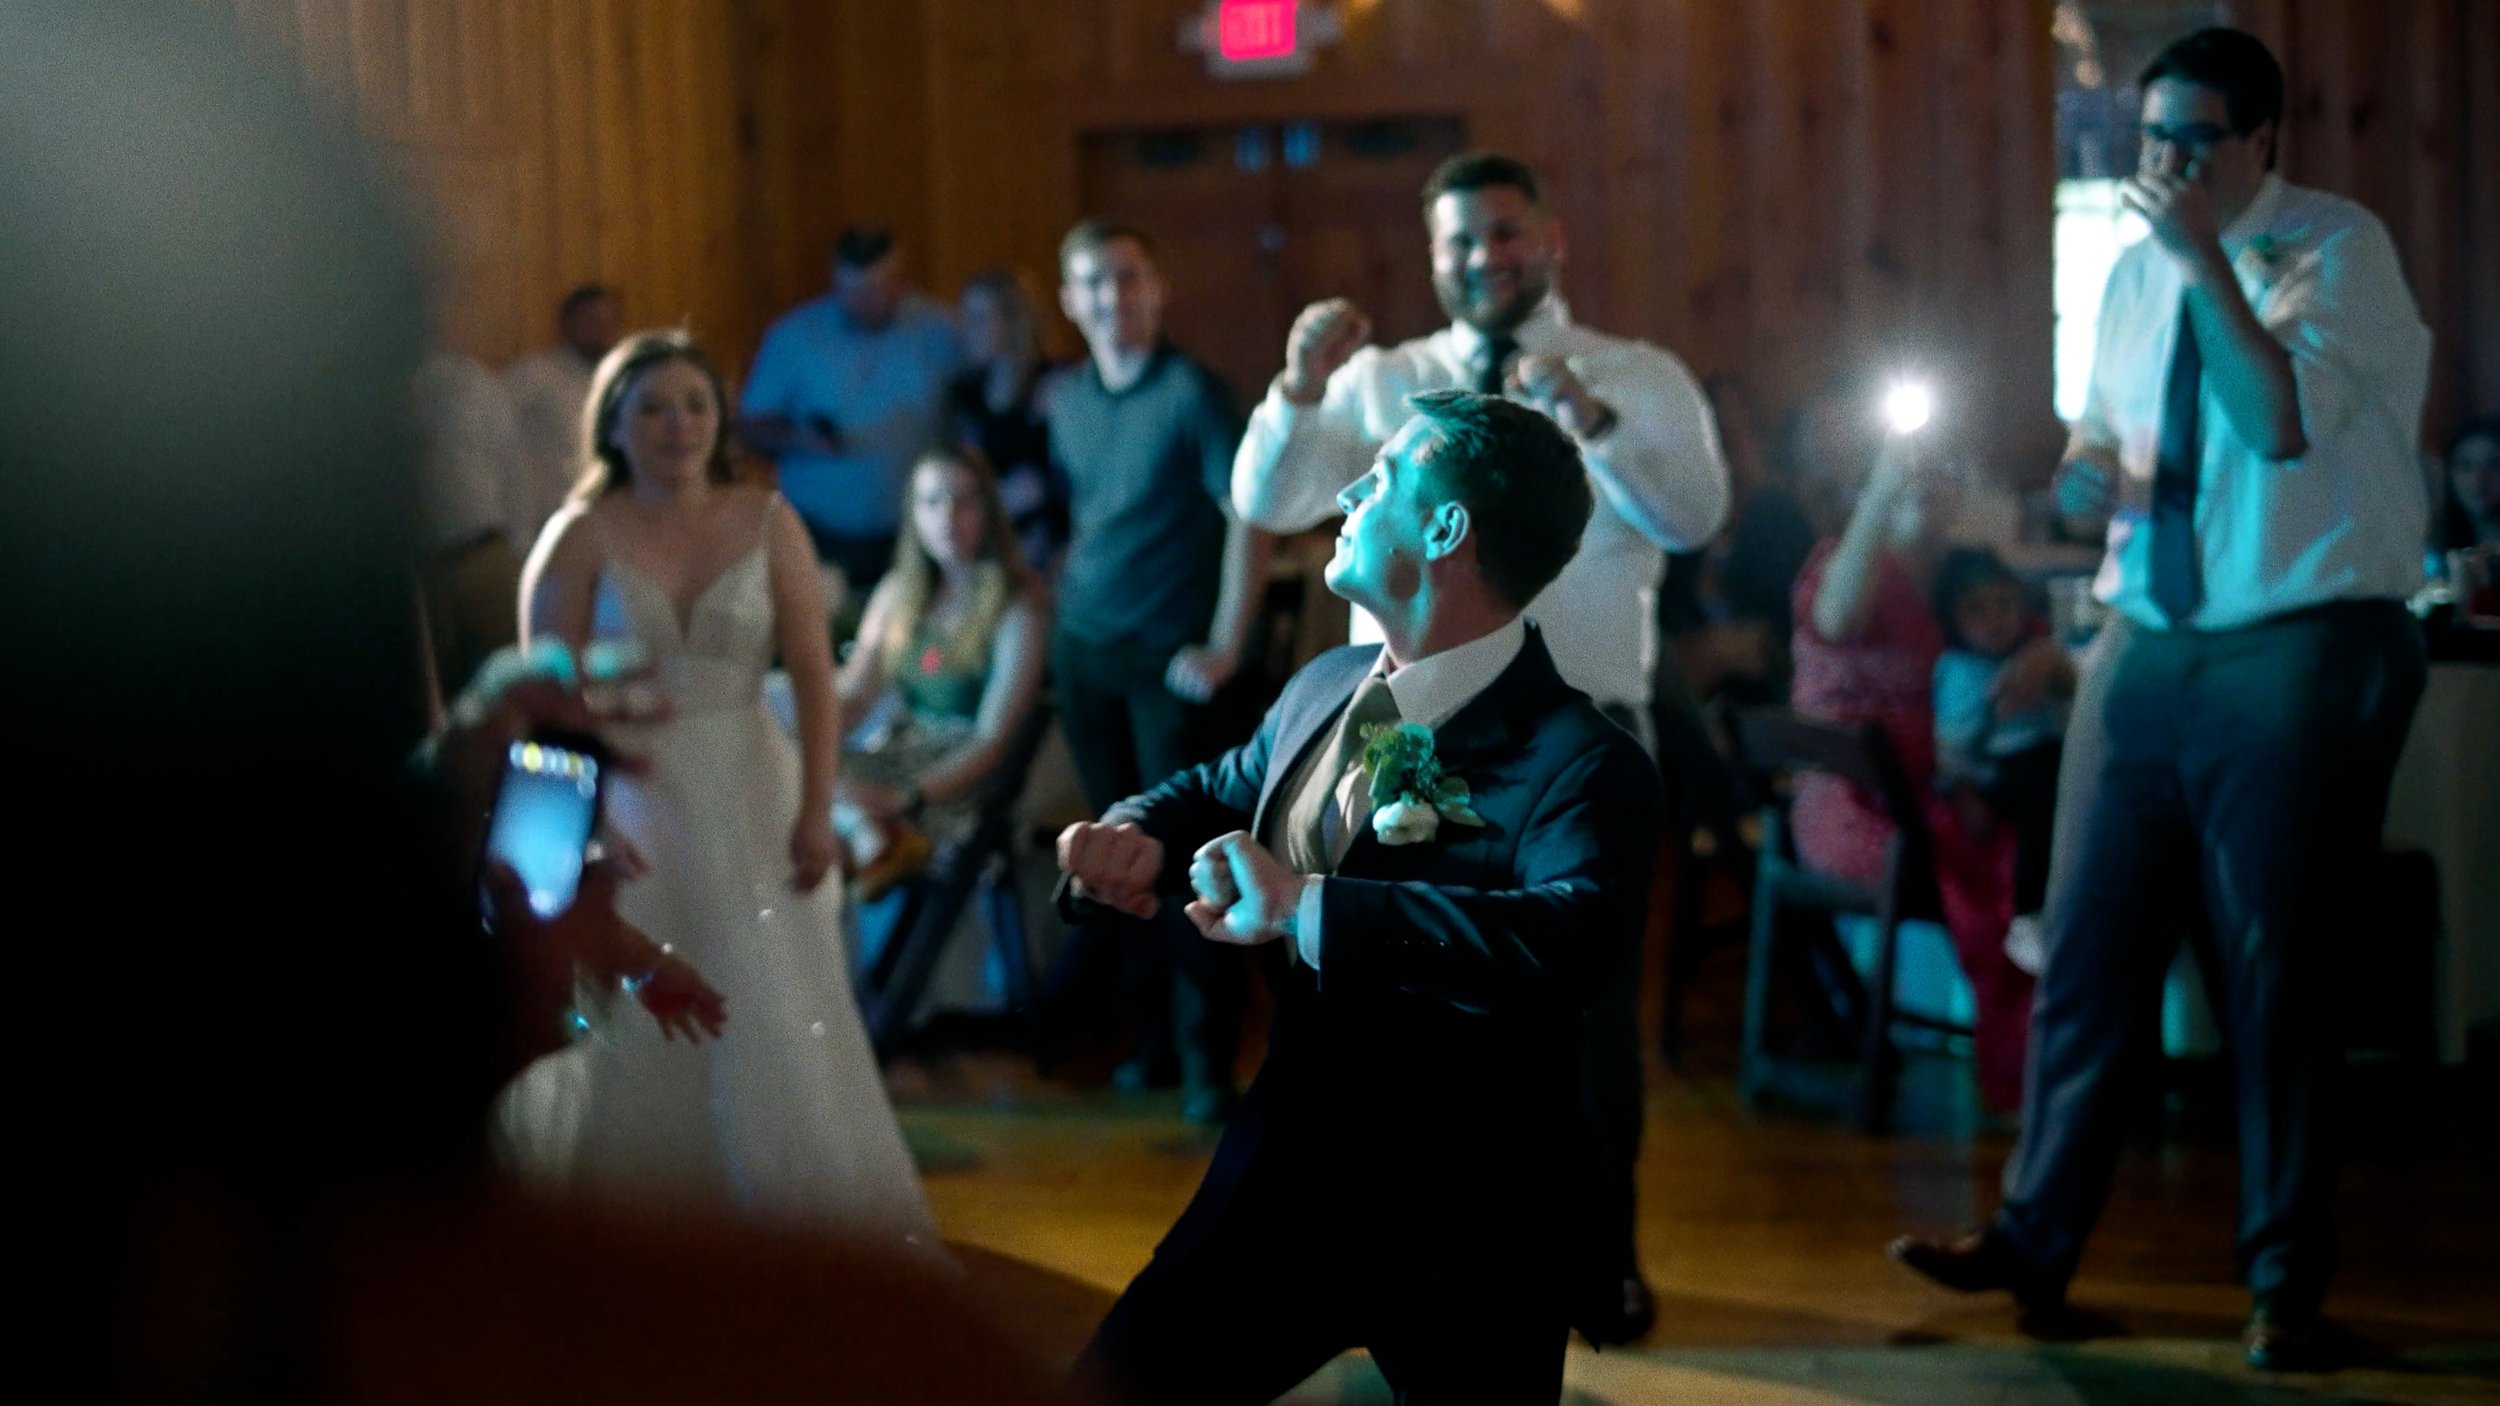 groom dancing on dance floor at wedding reception